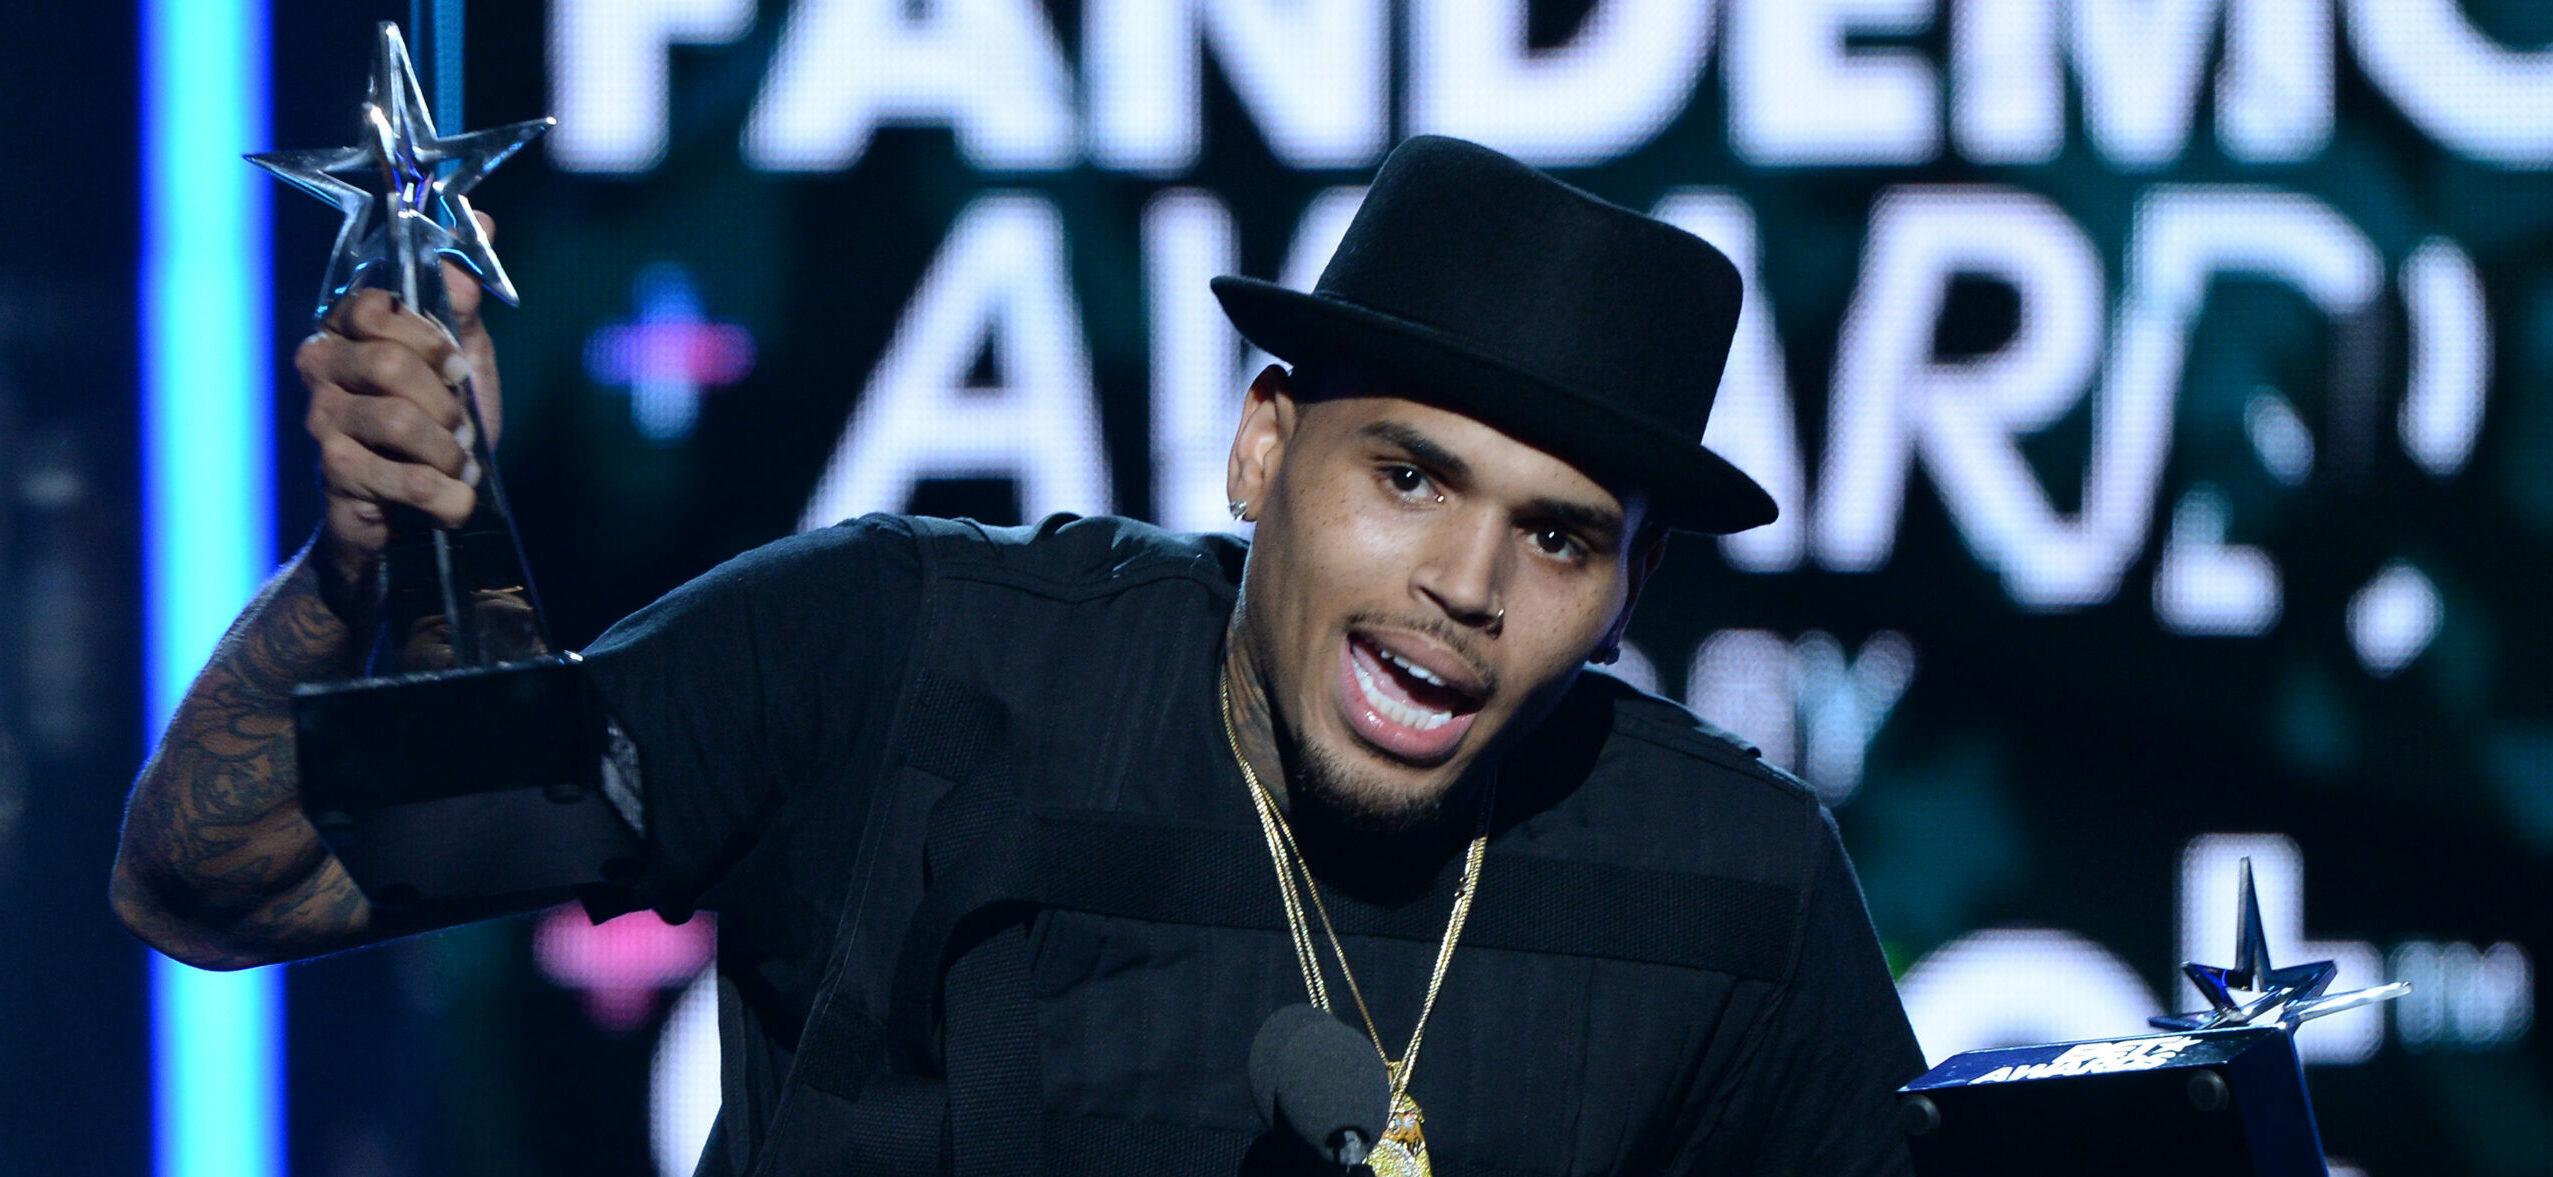 Chris Brown Responds To $20 Million Rape Lawsuit, Calls It A ‘Pattern’